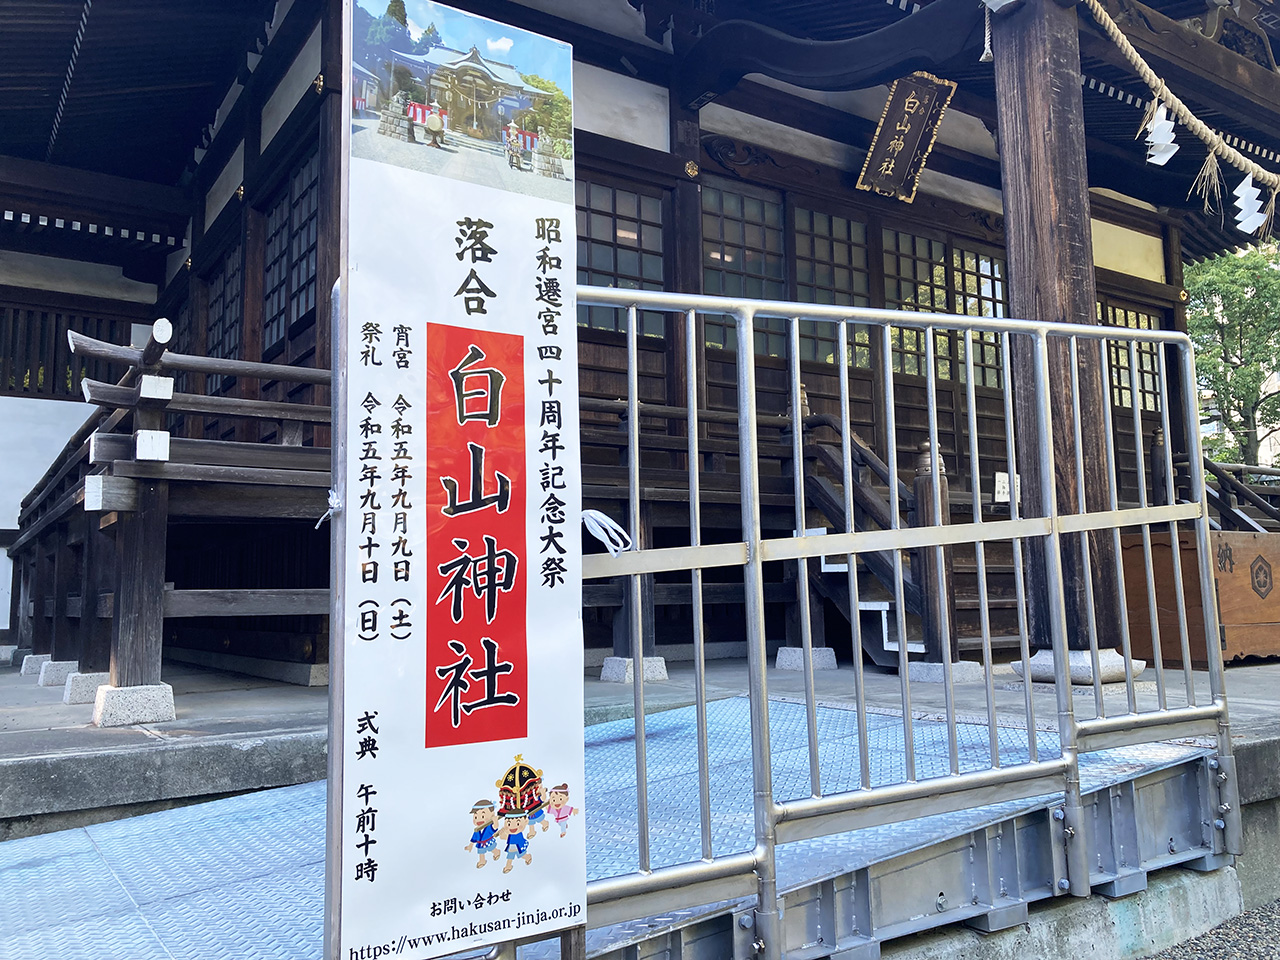 「第43回落合夏祭盆踊り大会」が白山神社の宵宮祭と同時に9/5に開催